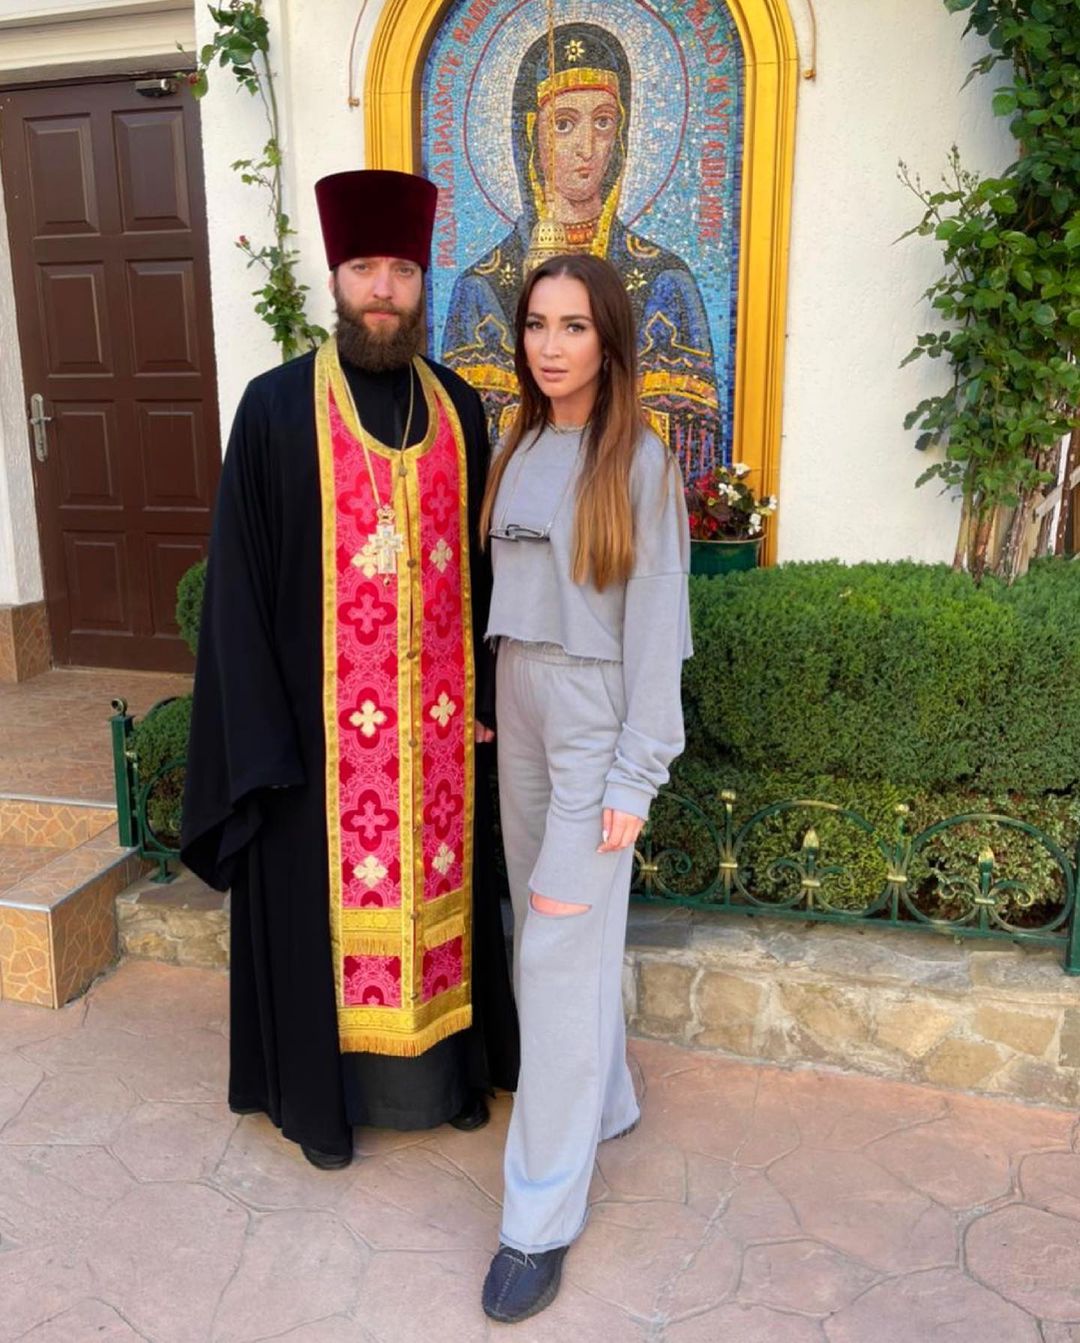 Ольгу Бузову осудили за фото со священником